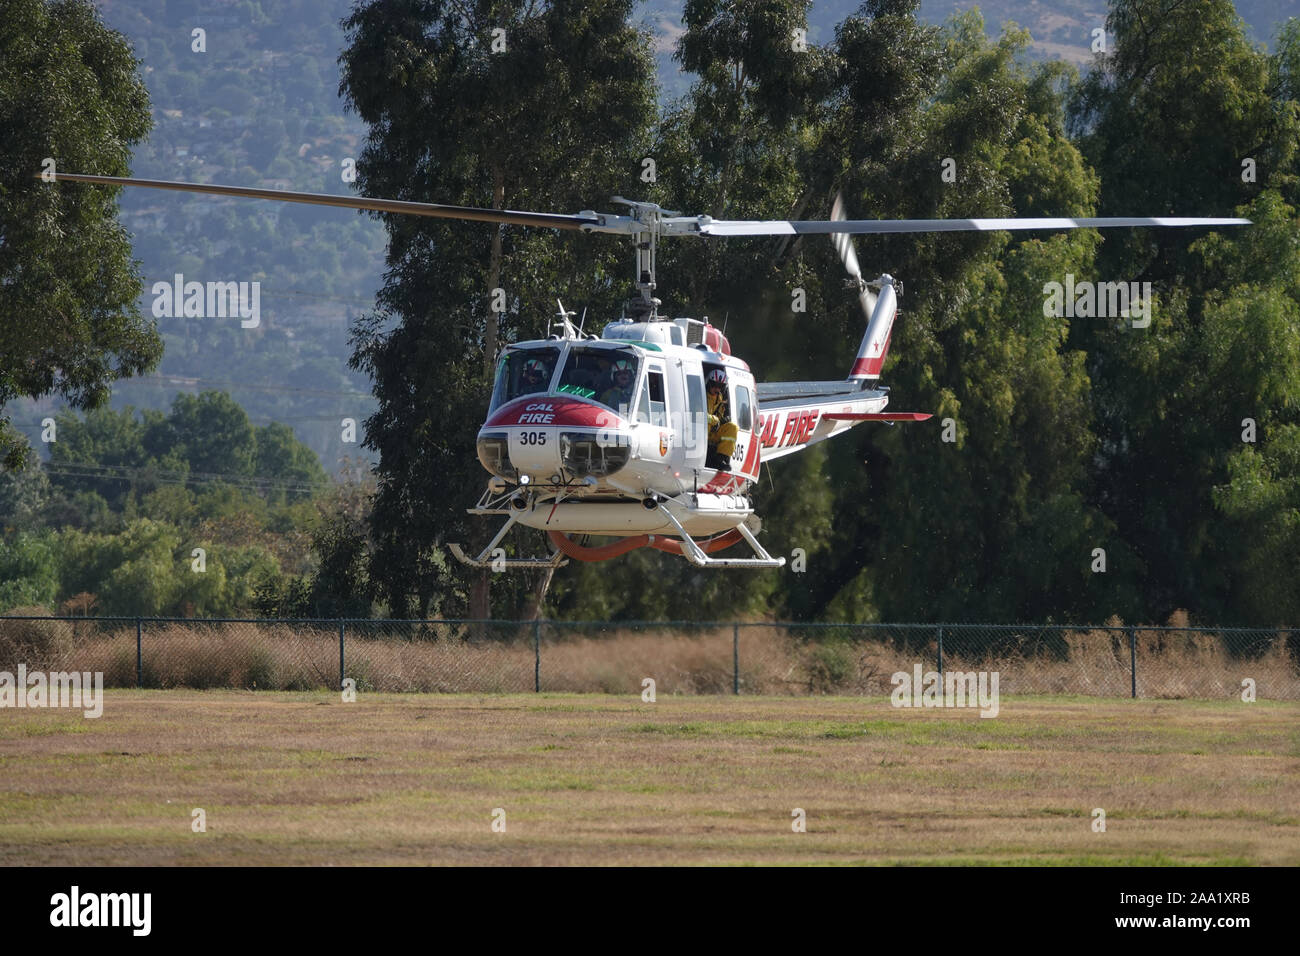 Sylmar, CA/USA - November 9, 2019: Eine Cal Fire Bell UH-1H Hubschrauber, betrieben durch die Vereinigten Staaten Ministerium für Landwirtschaft (USDA), ist die Landung gezeigt. Stockfoto